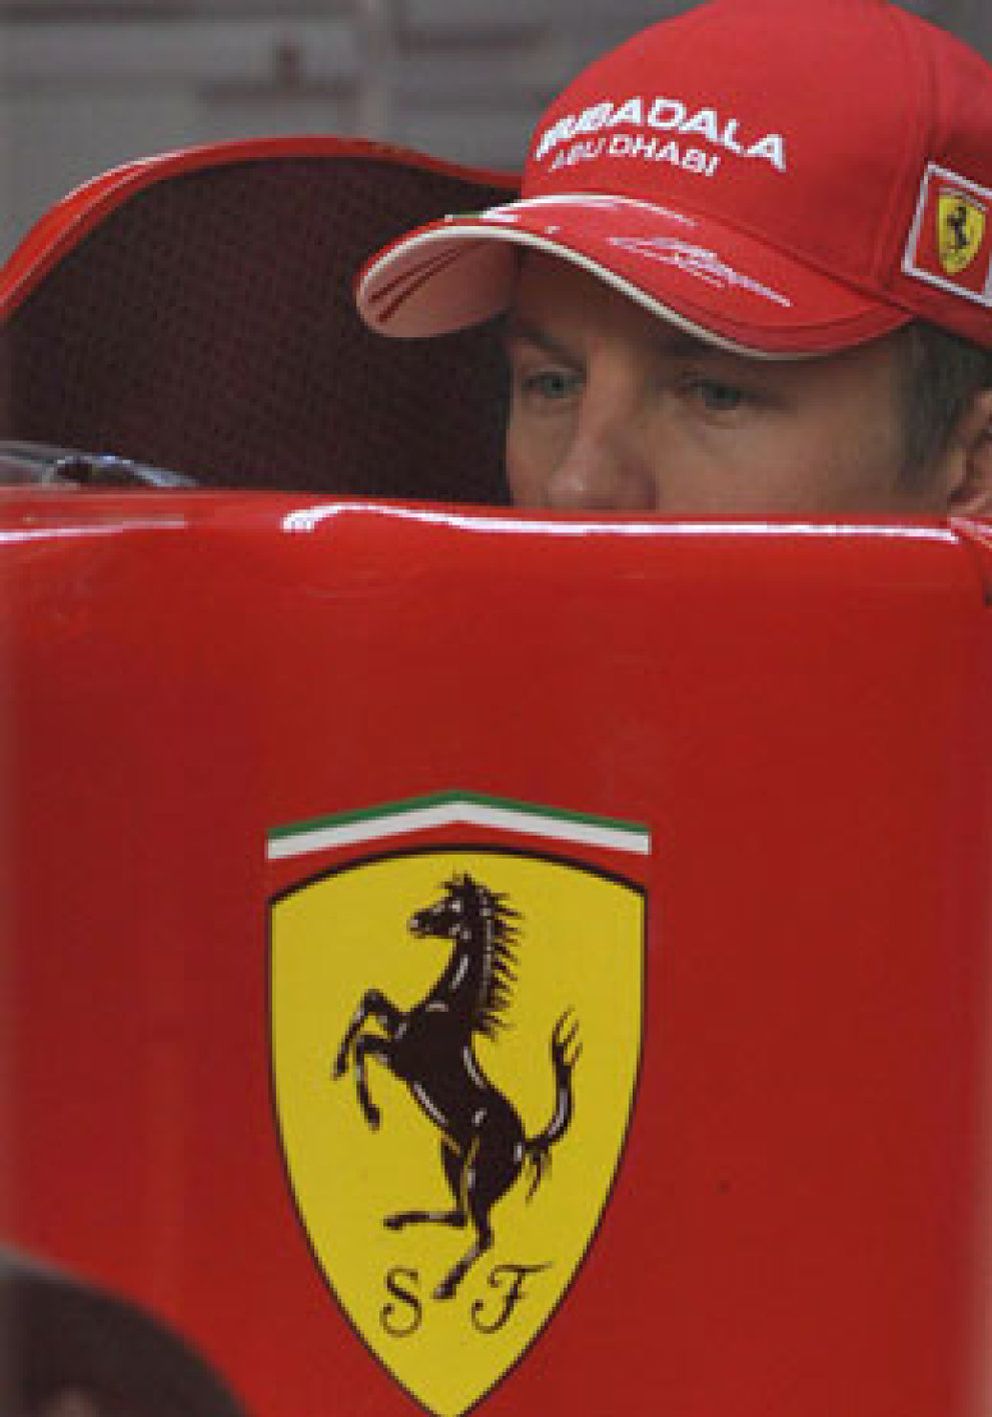 Foto: Raikkonen, pese a su mal inicio: "No siento presión de Ferrari"